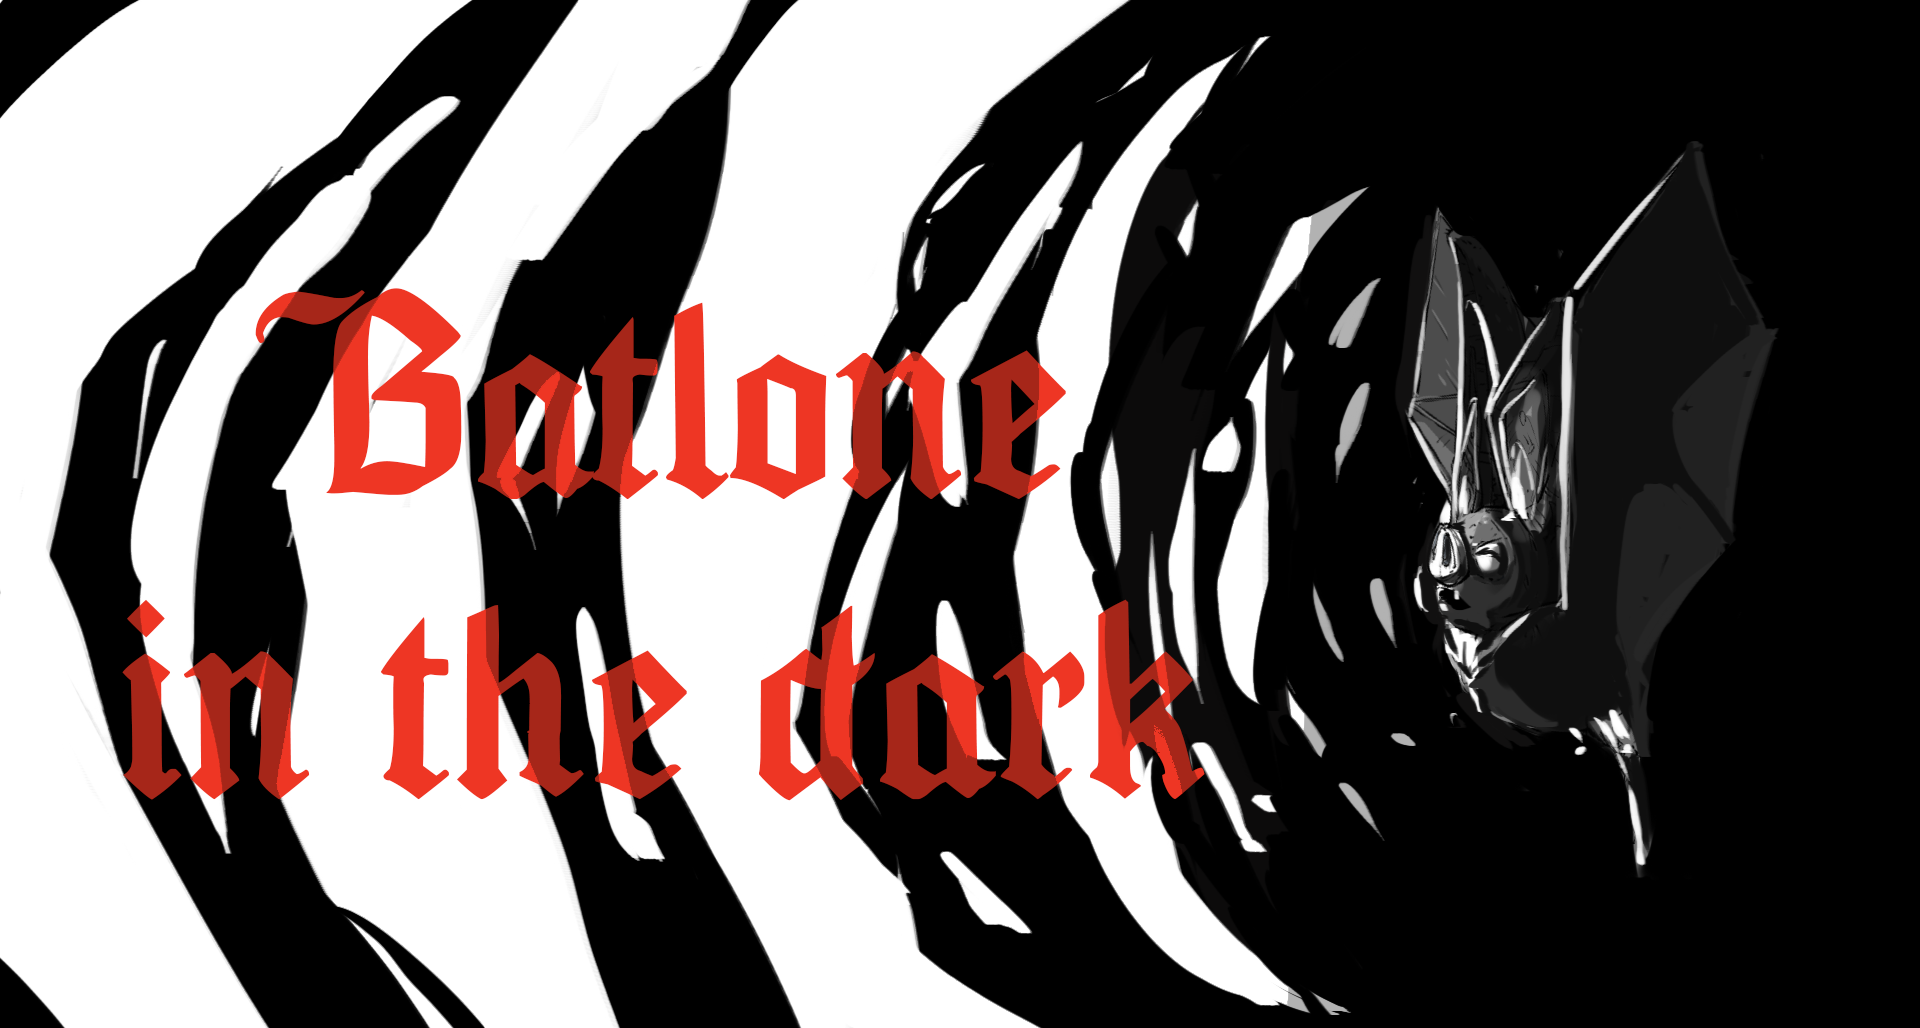 Batlone in the dark